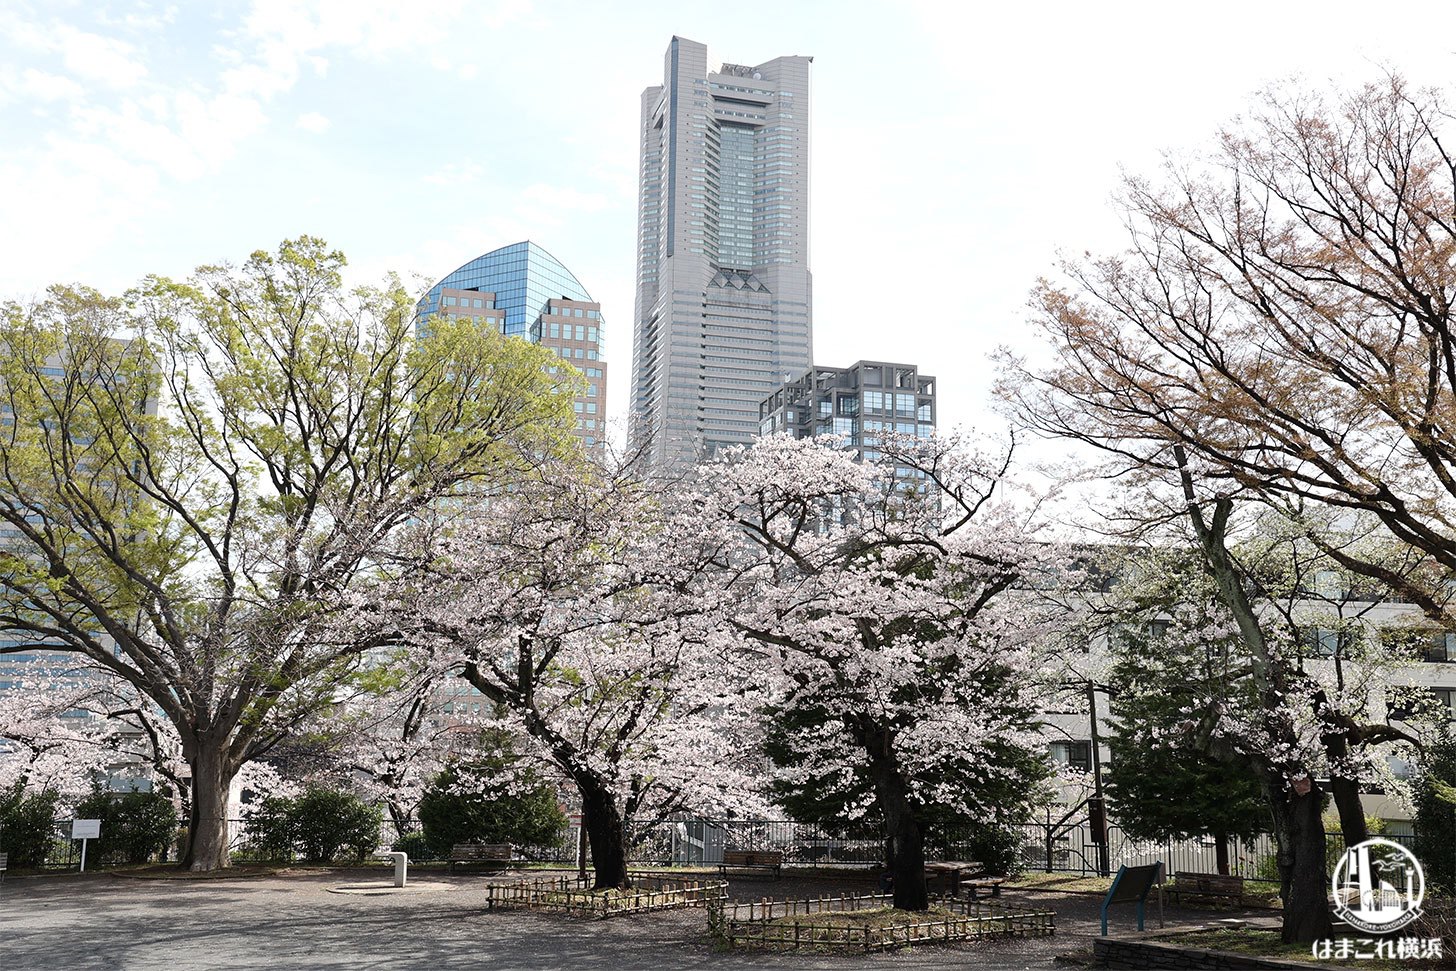 掃部山公園 山頂から見た桜と横浜ランドマークタワー